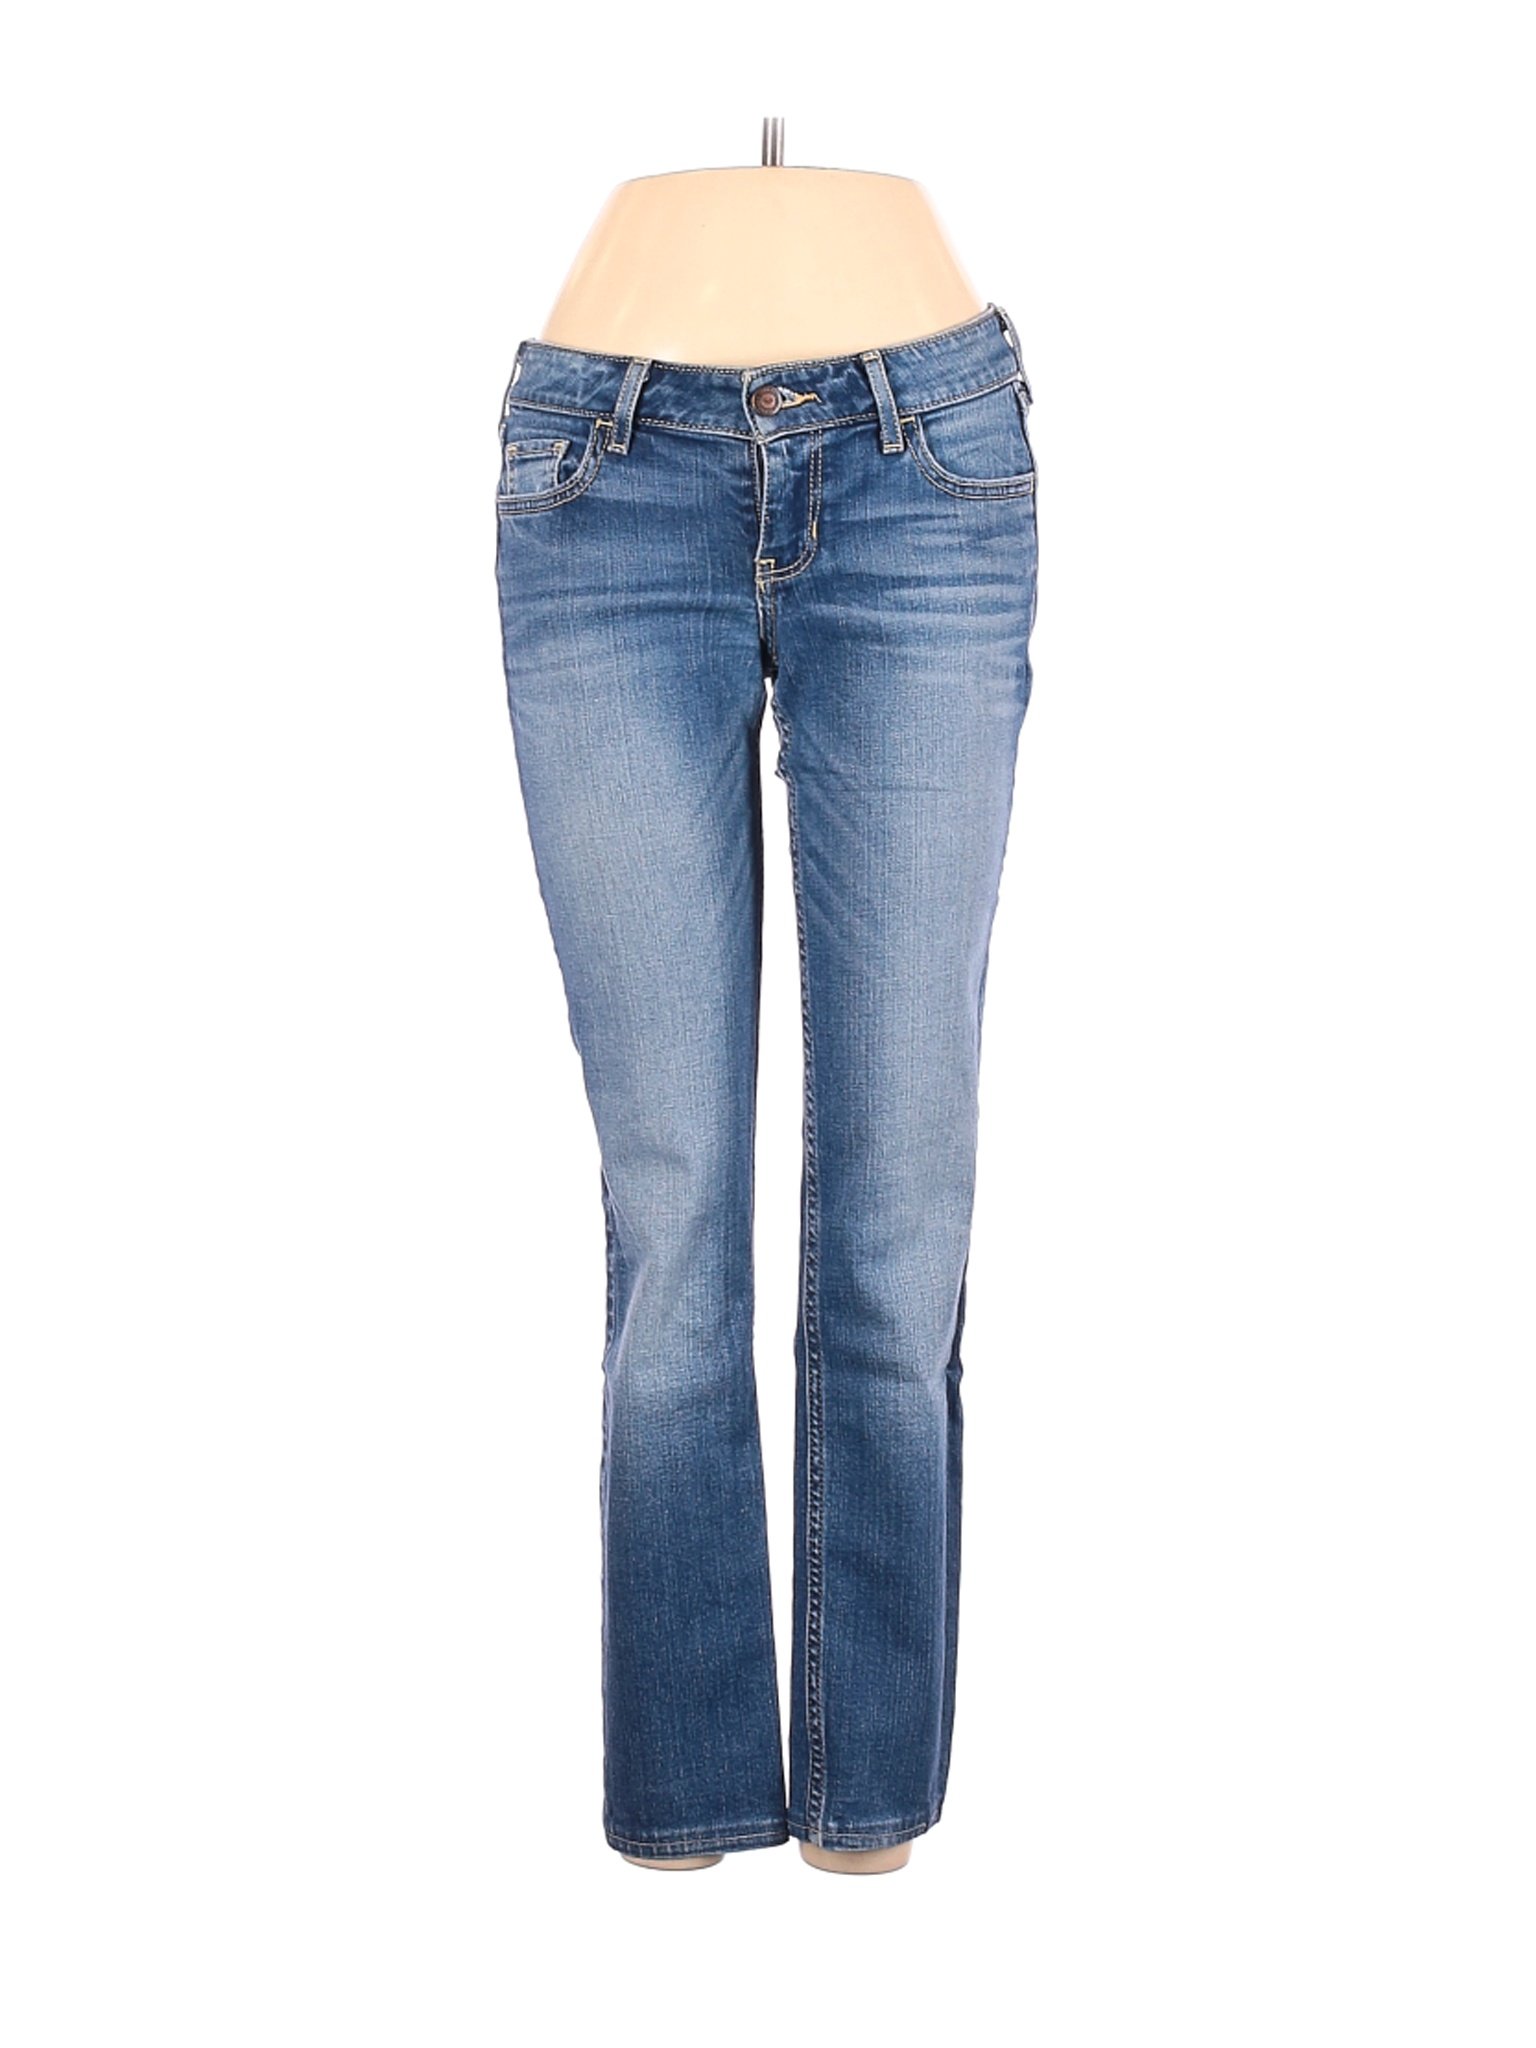 Hollister Women Blue Jeans 1 | eBay